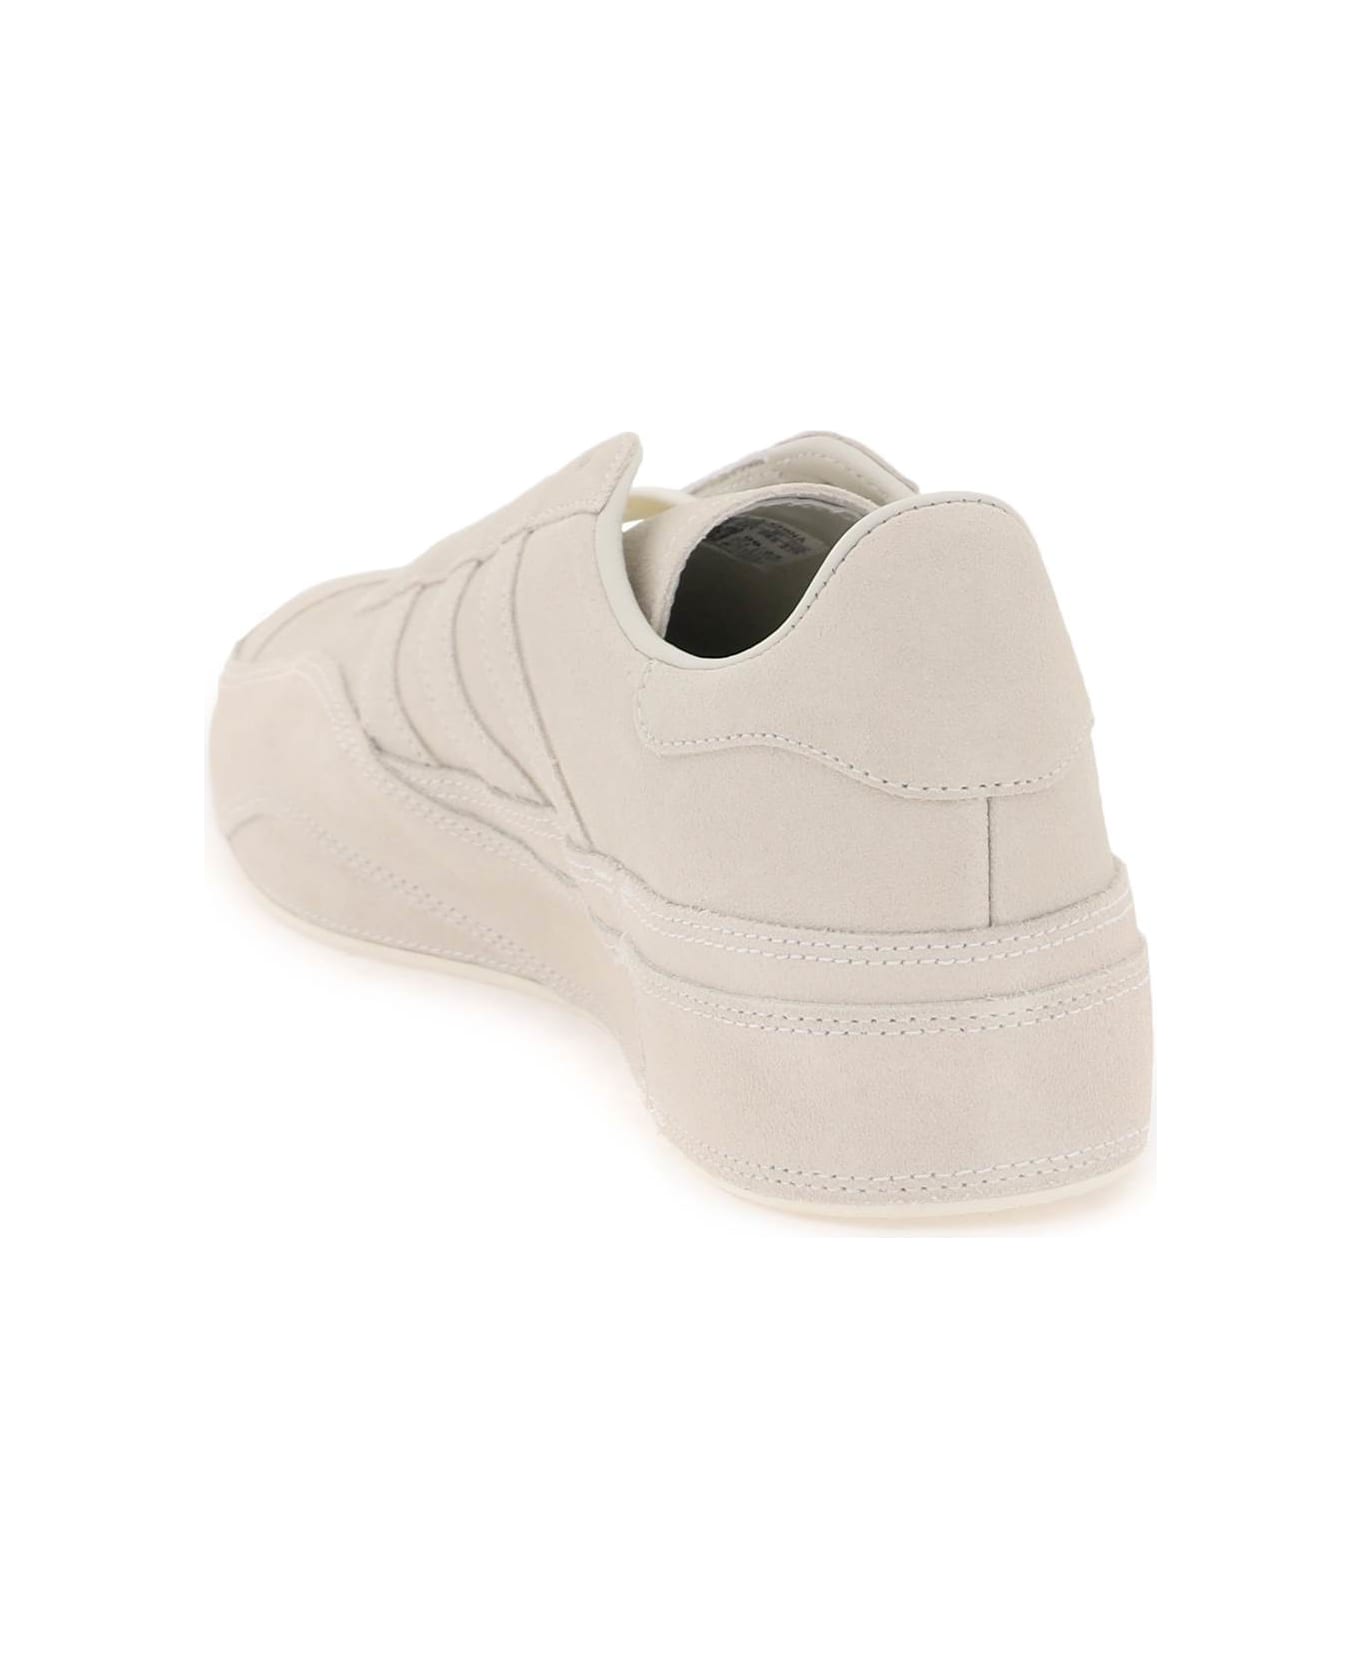 Y-3 Gazzelle Sneakers - OWHITE OWHITE OWHITE (Beige)